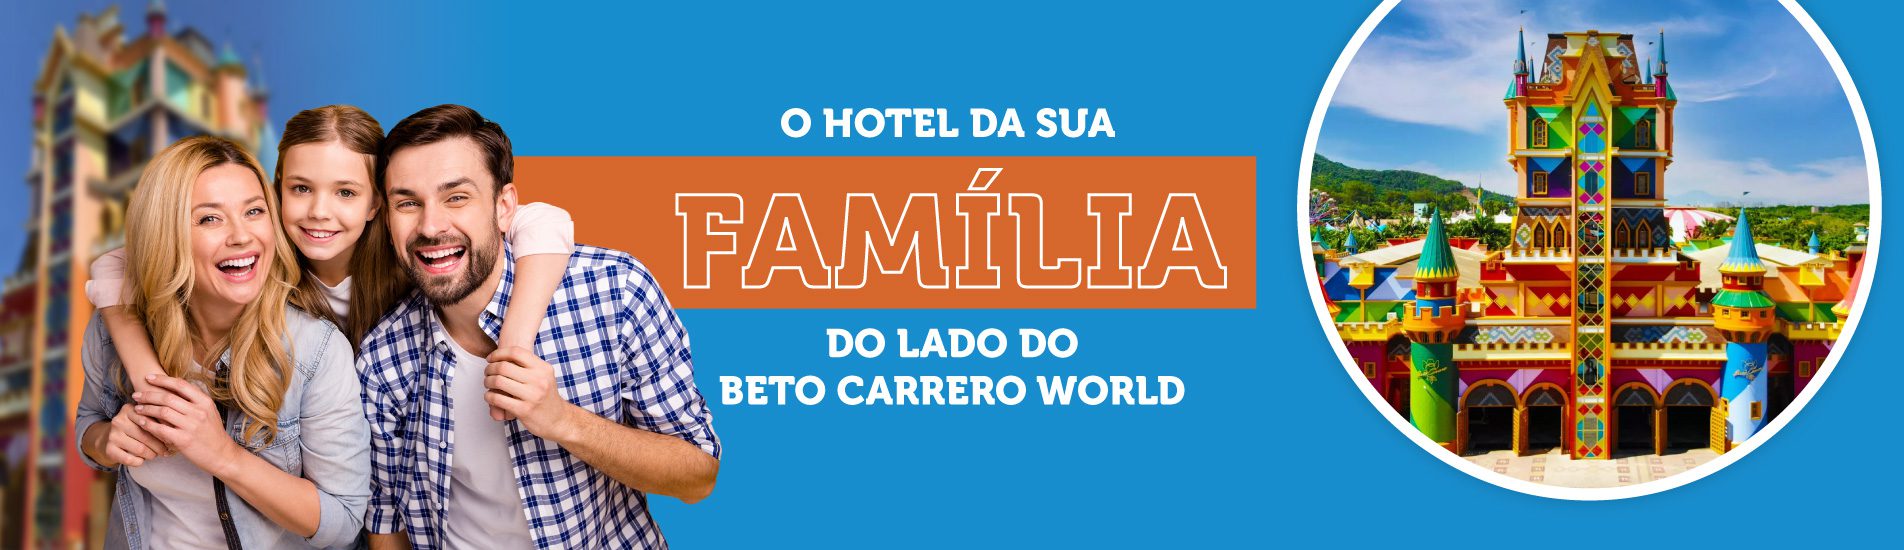 O hotel da sua família do lado do Beto Carrero World